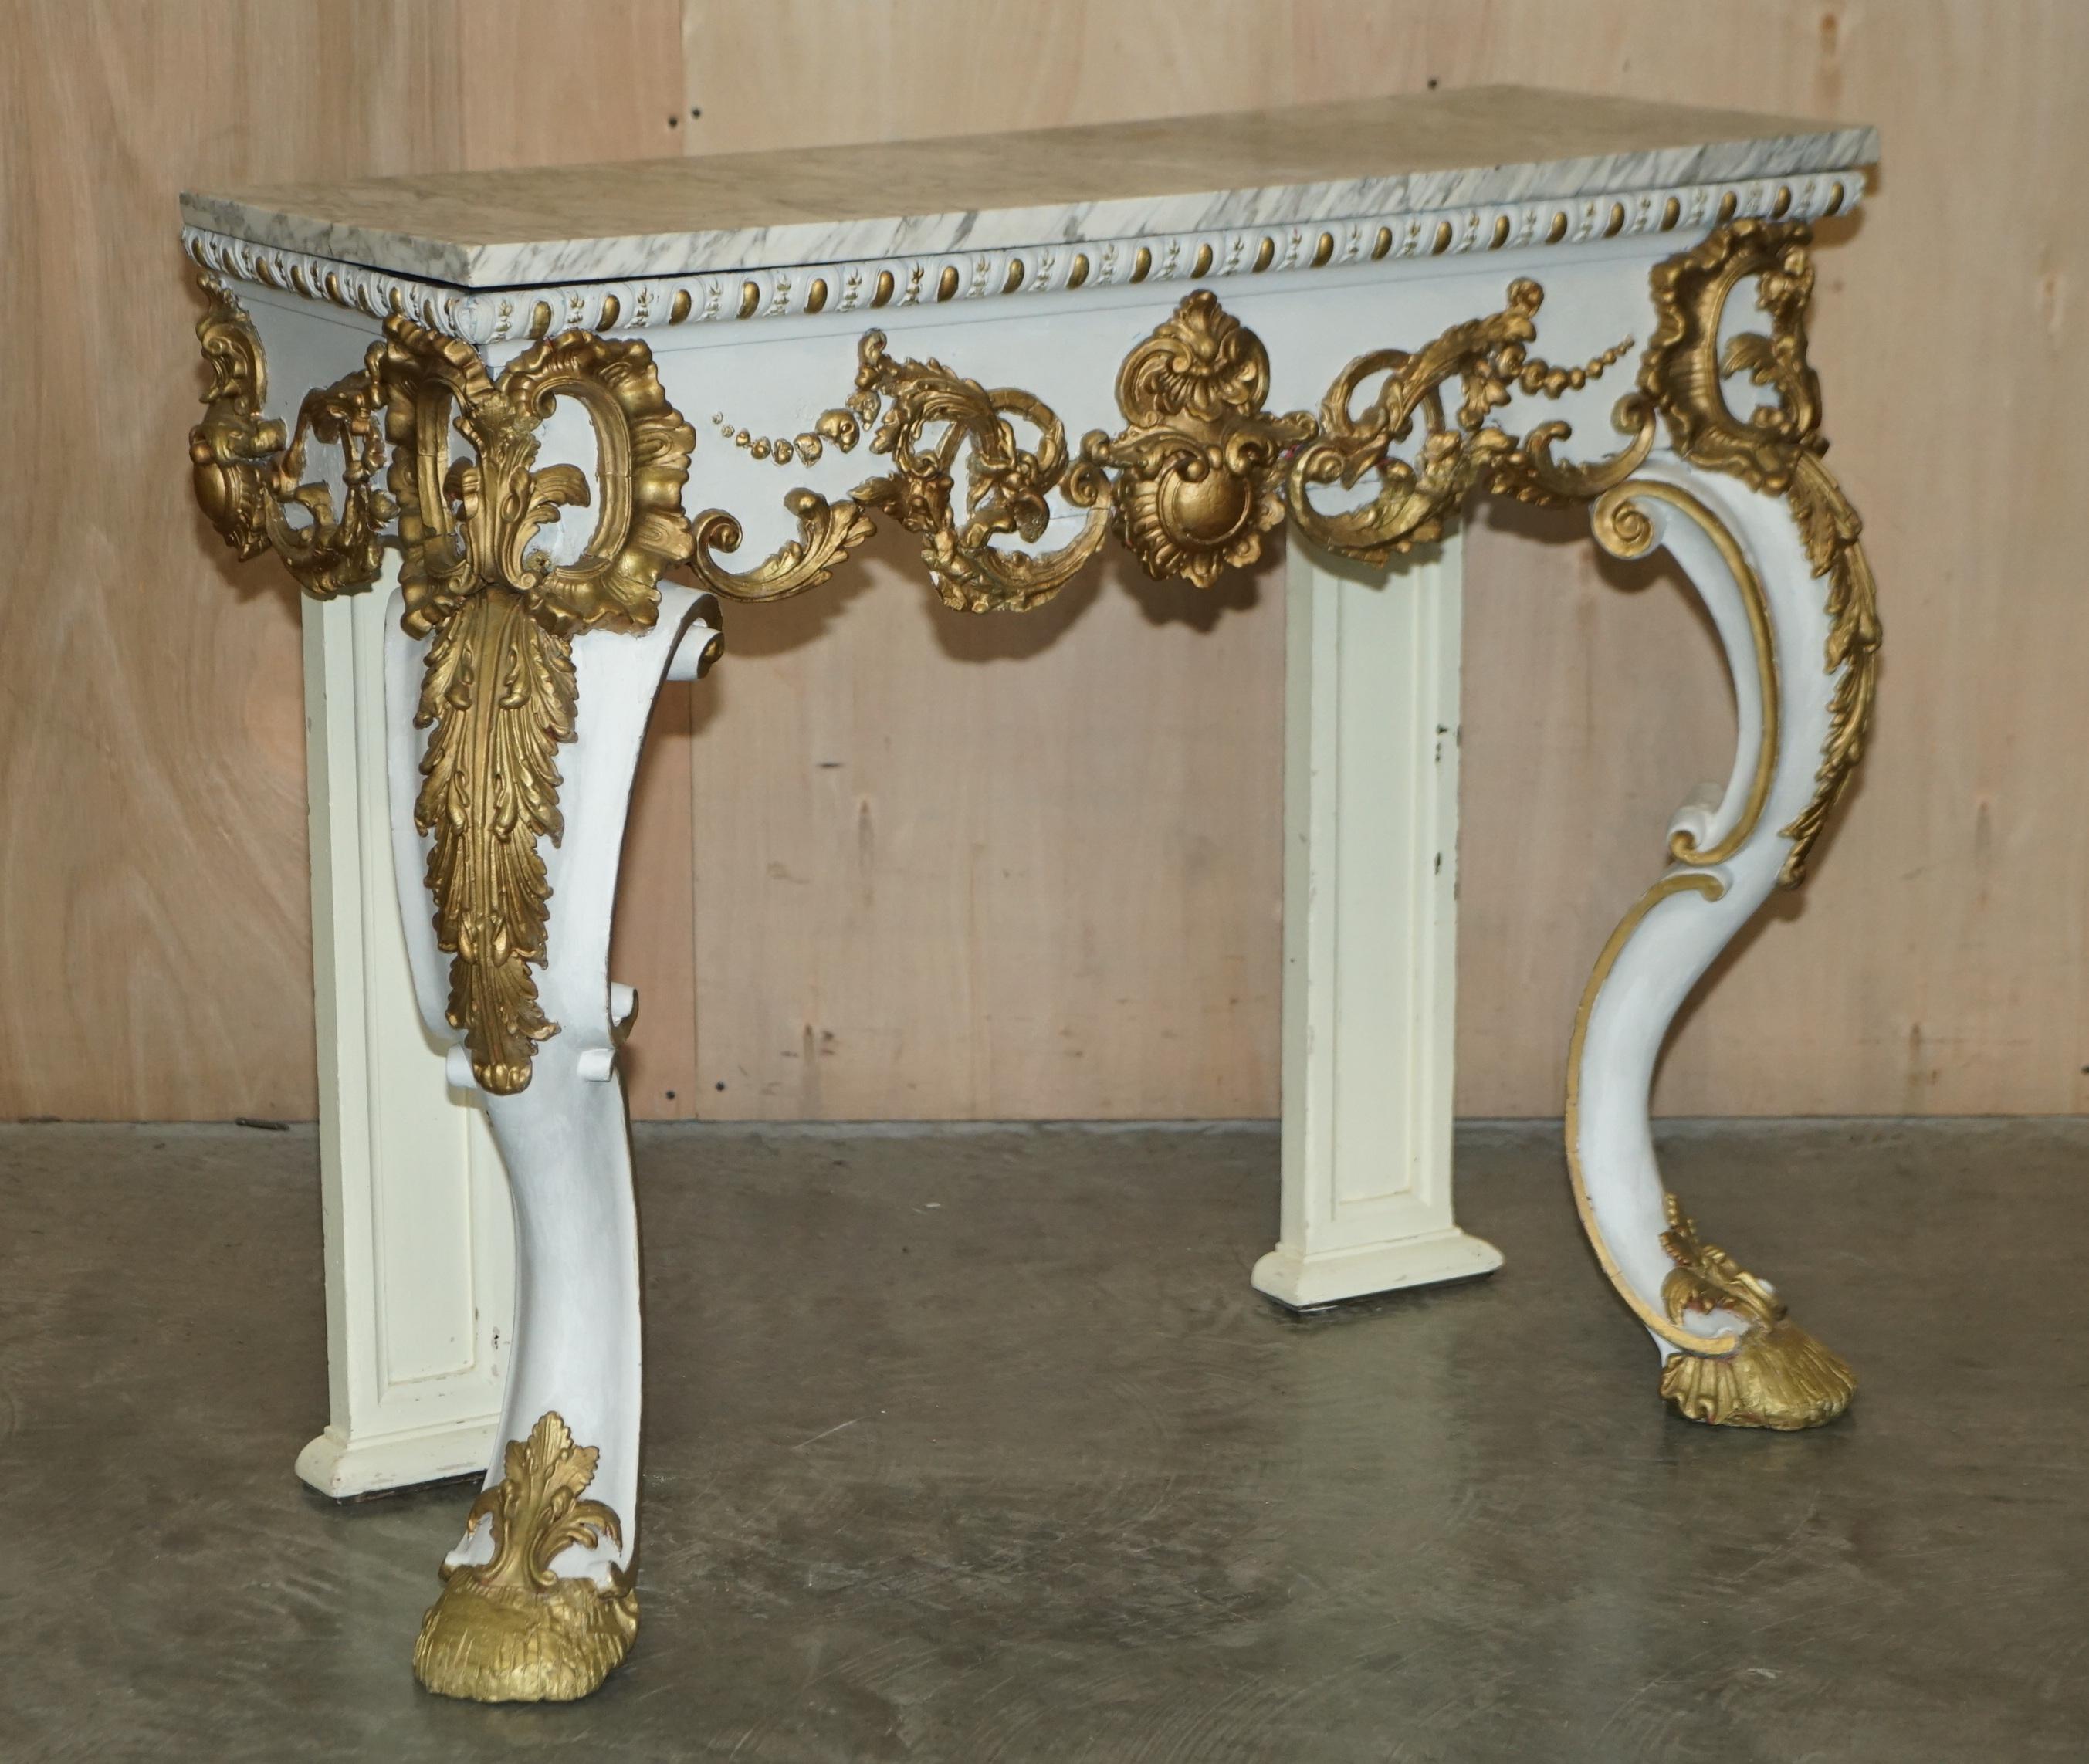 Royal House Antiques

Royal House Antiques a le plaisir d'offrir à la vente cette belle table console italienne en bois doré avec dessus en marbre vers 1860 à Venise.

Veuillez noter que les frais de livraison indiqués ne sont qu'un guide, ils